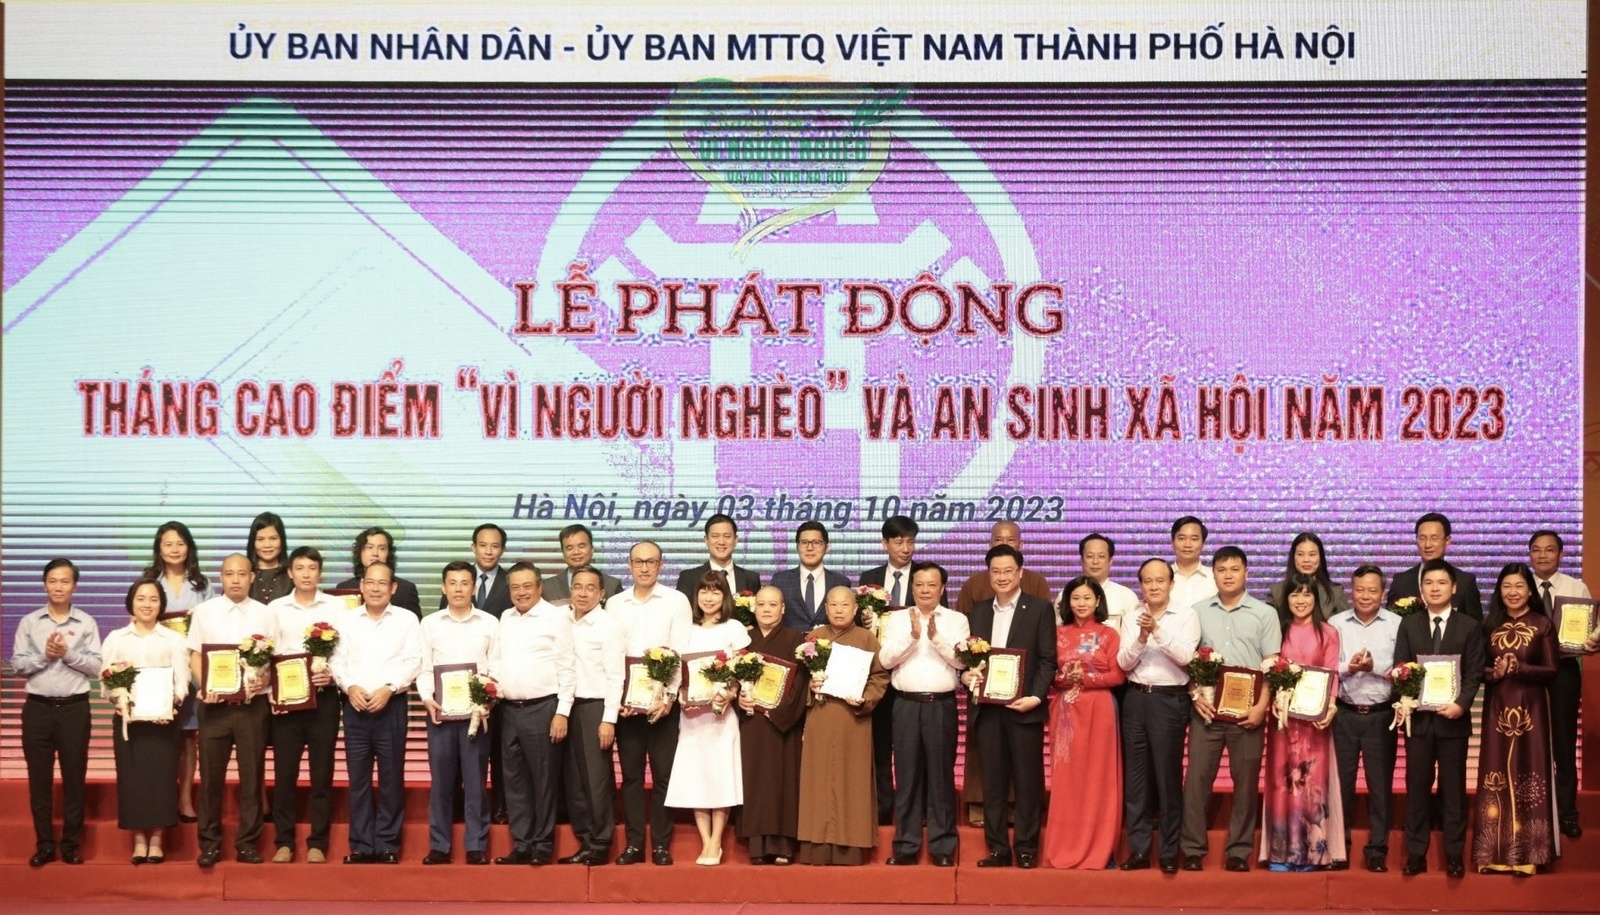 T&T Group là một trong những doanh nghiệp được UBND - Ủy ban MTTQ Việt Nam TP Hà Nội vinh danh vì những đóng góp tích cực cho công tác giảm nghèo và an sinh xã hội của thành phố. (Nguồn: T&T Group)